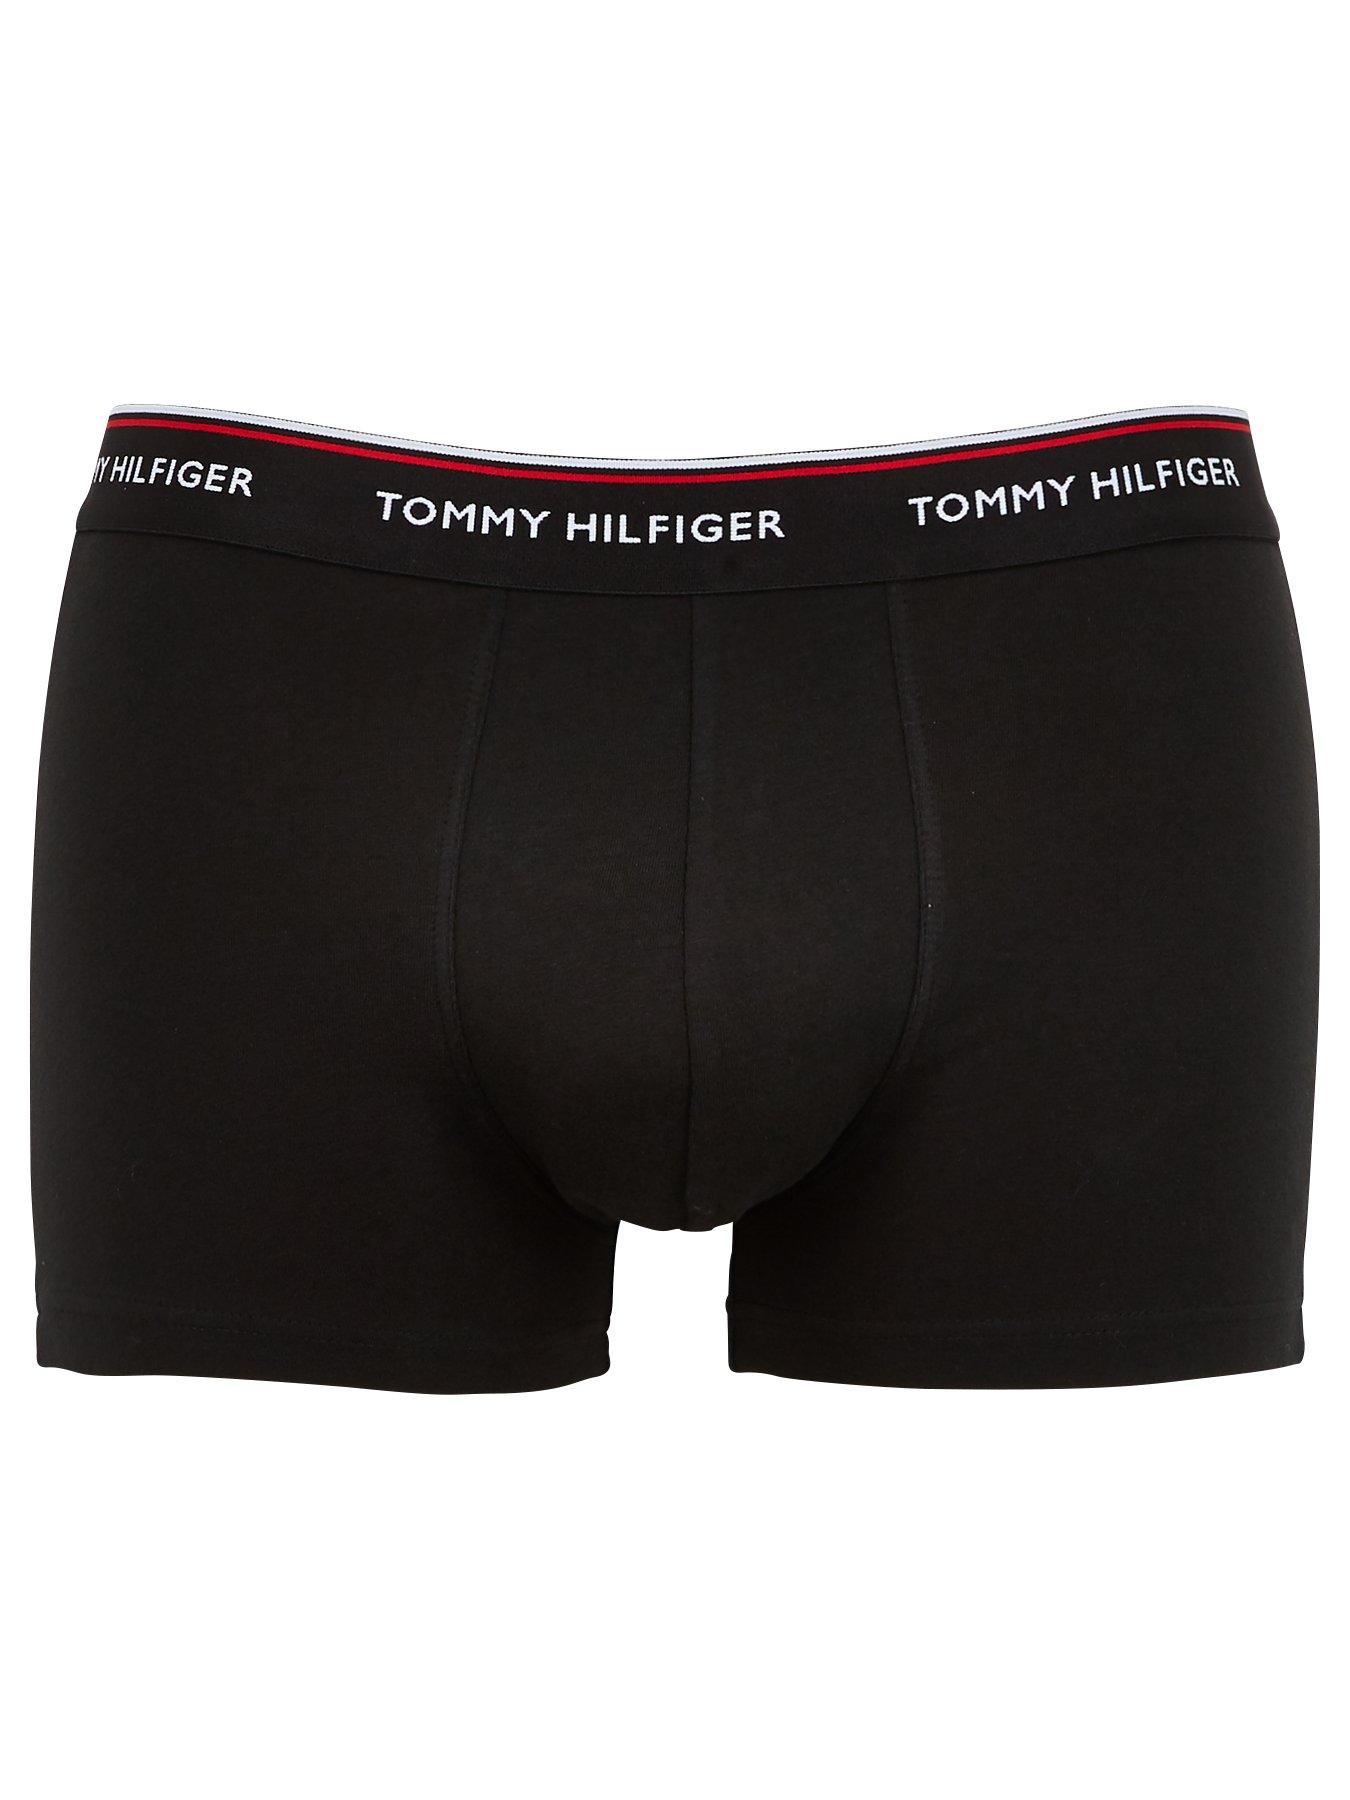 Tommy Hilfiger 3 Pack Premium Essentials Trunks - Black/White/Grey